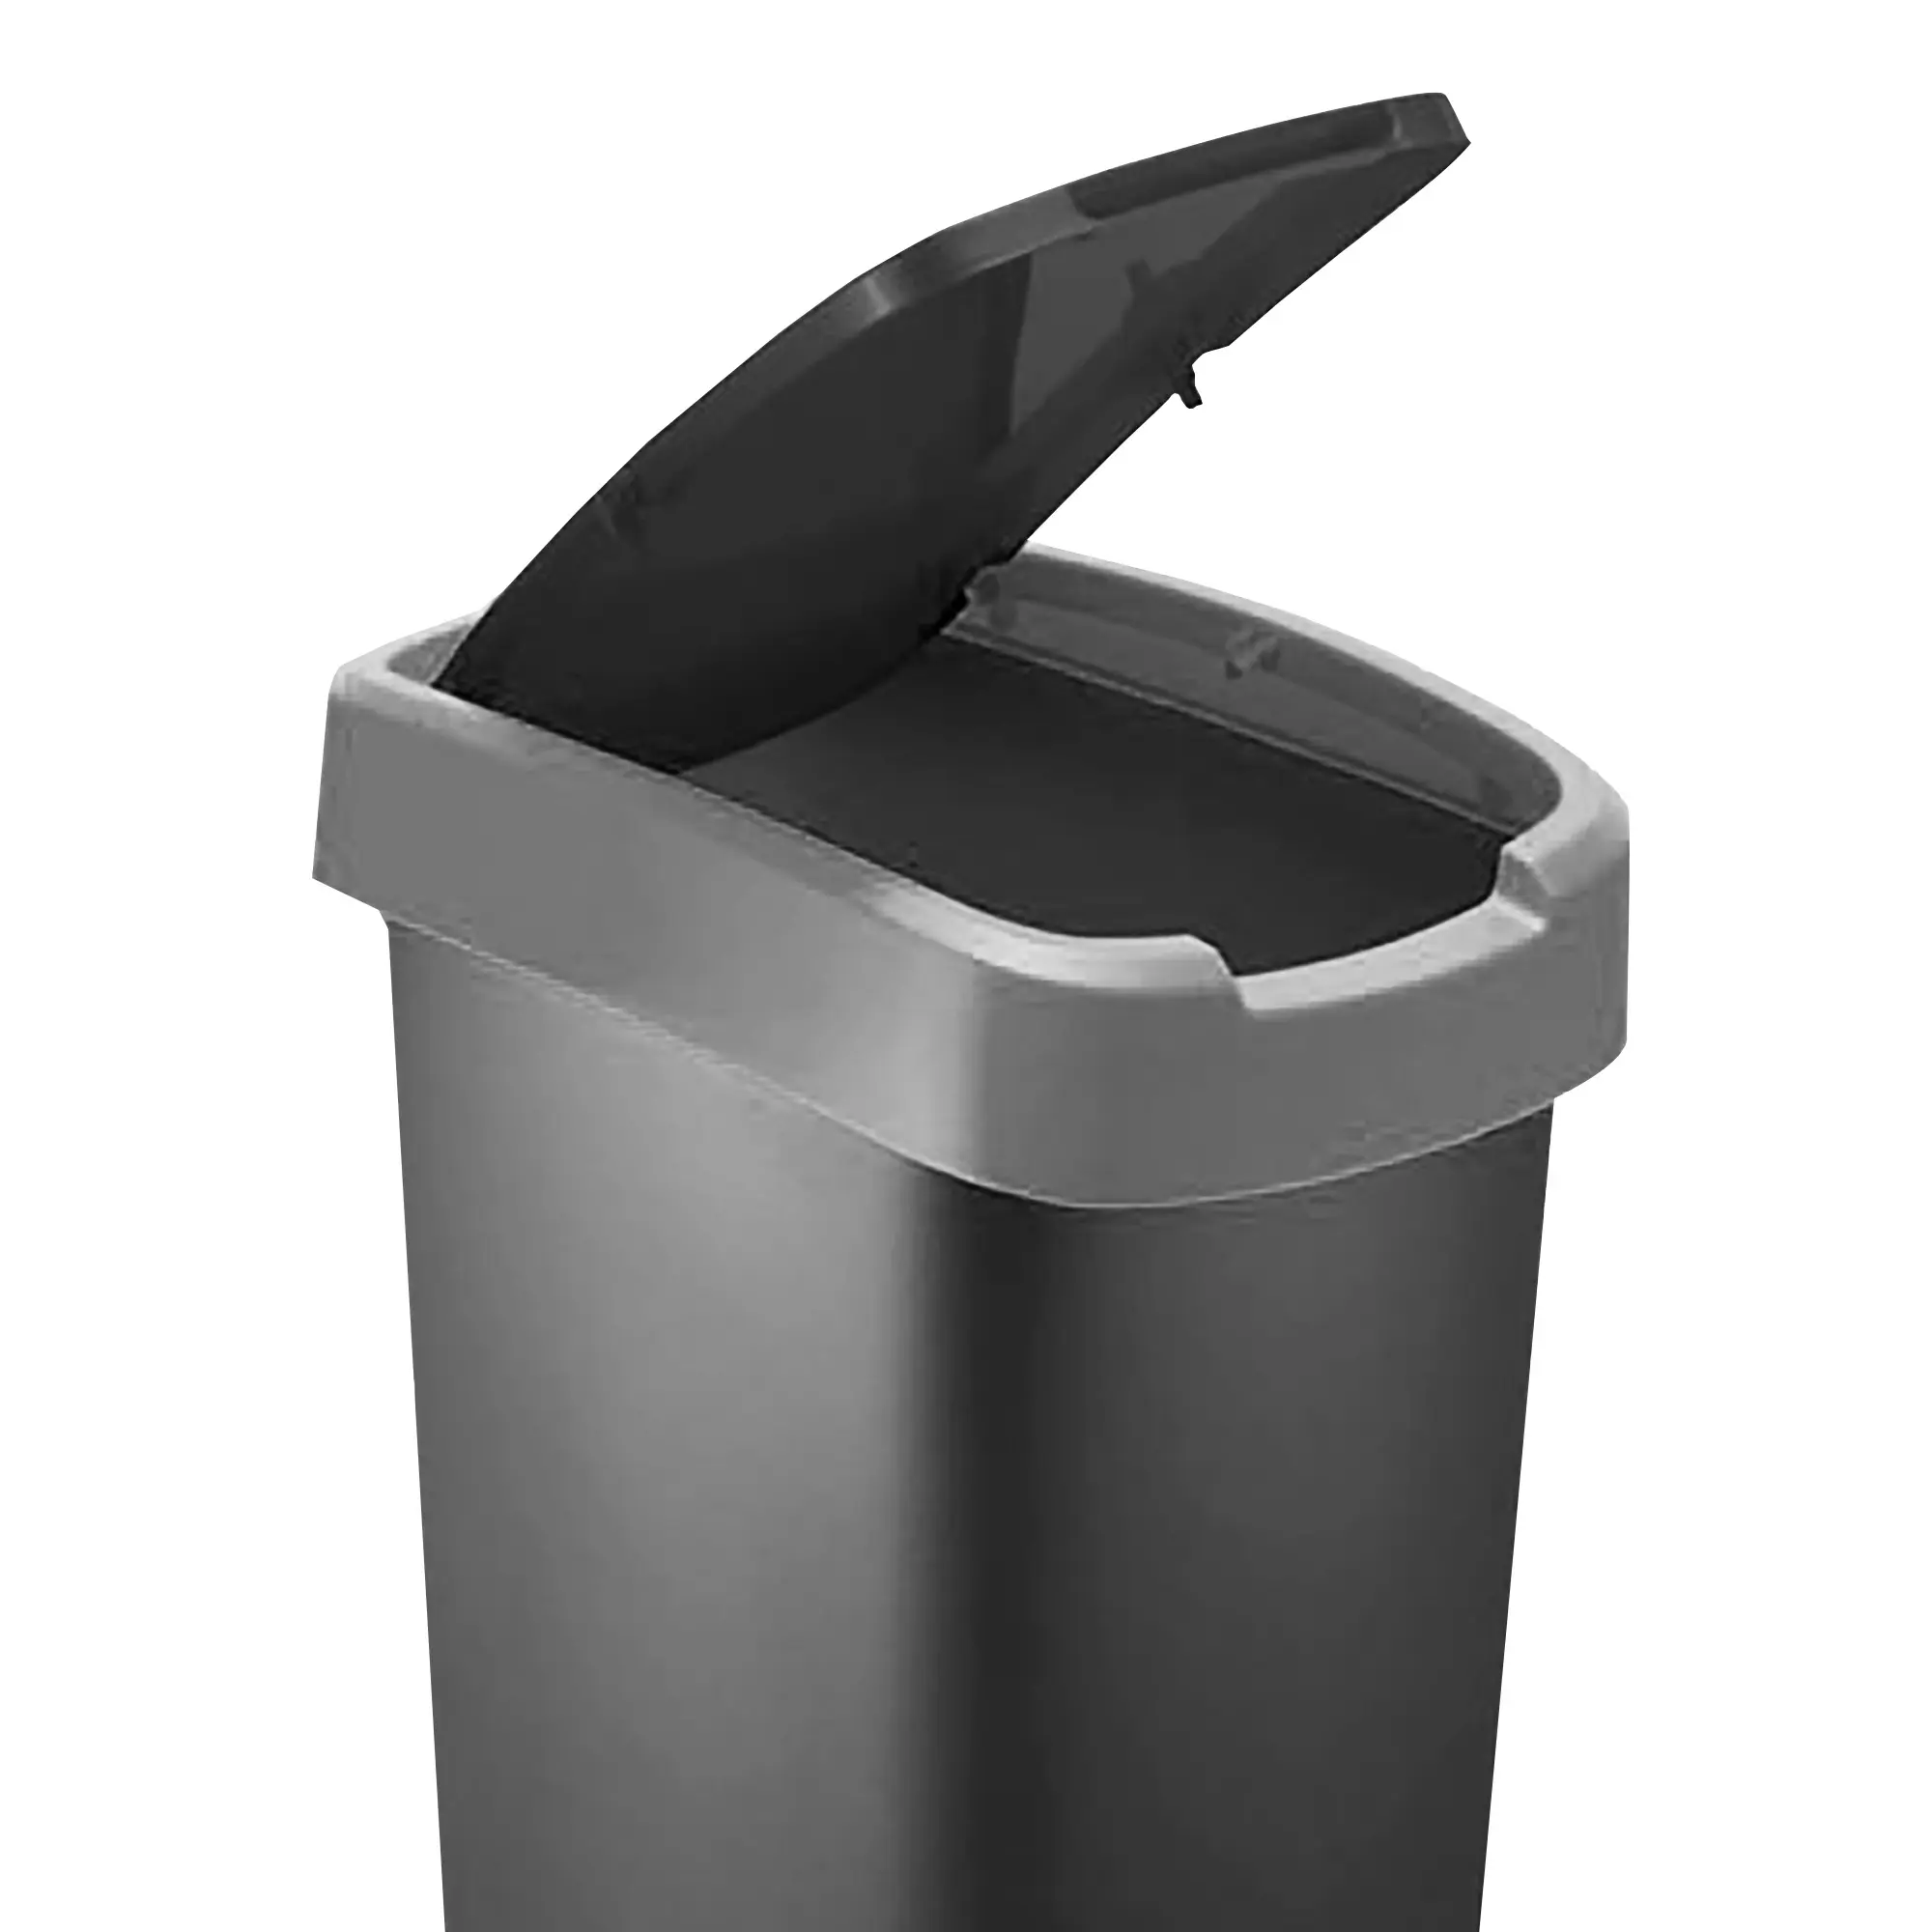 RothoPro Twist Abfallbehälter 50 Liter schwarz/silber Klappfunktion 59135421